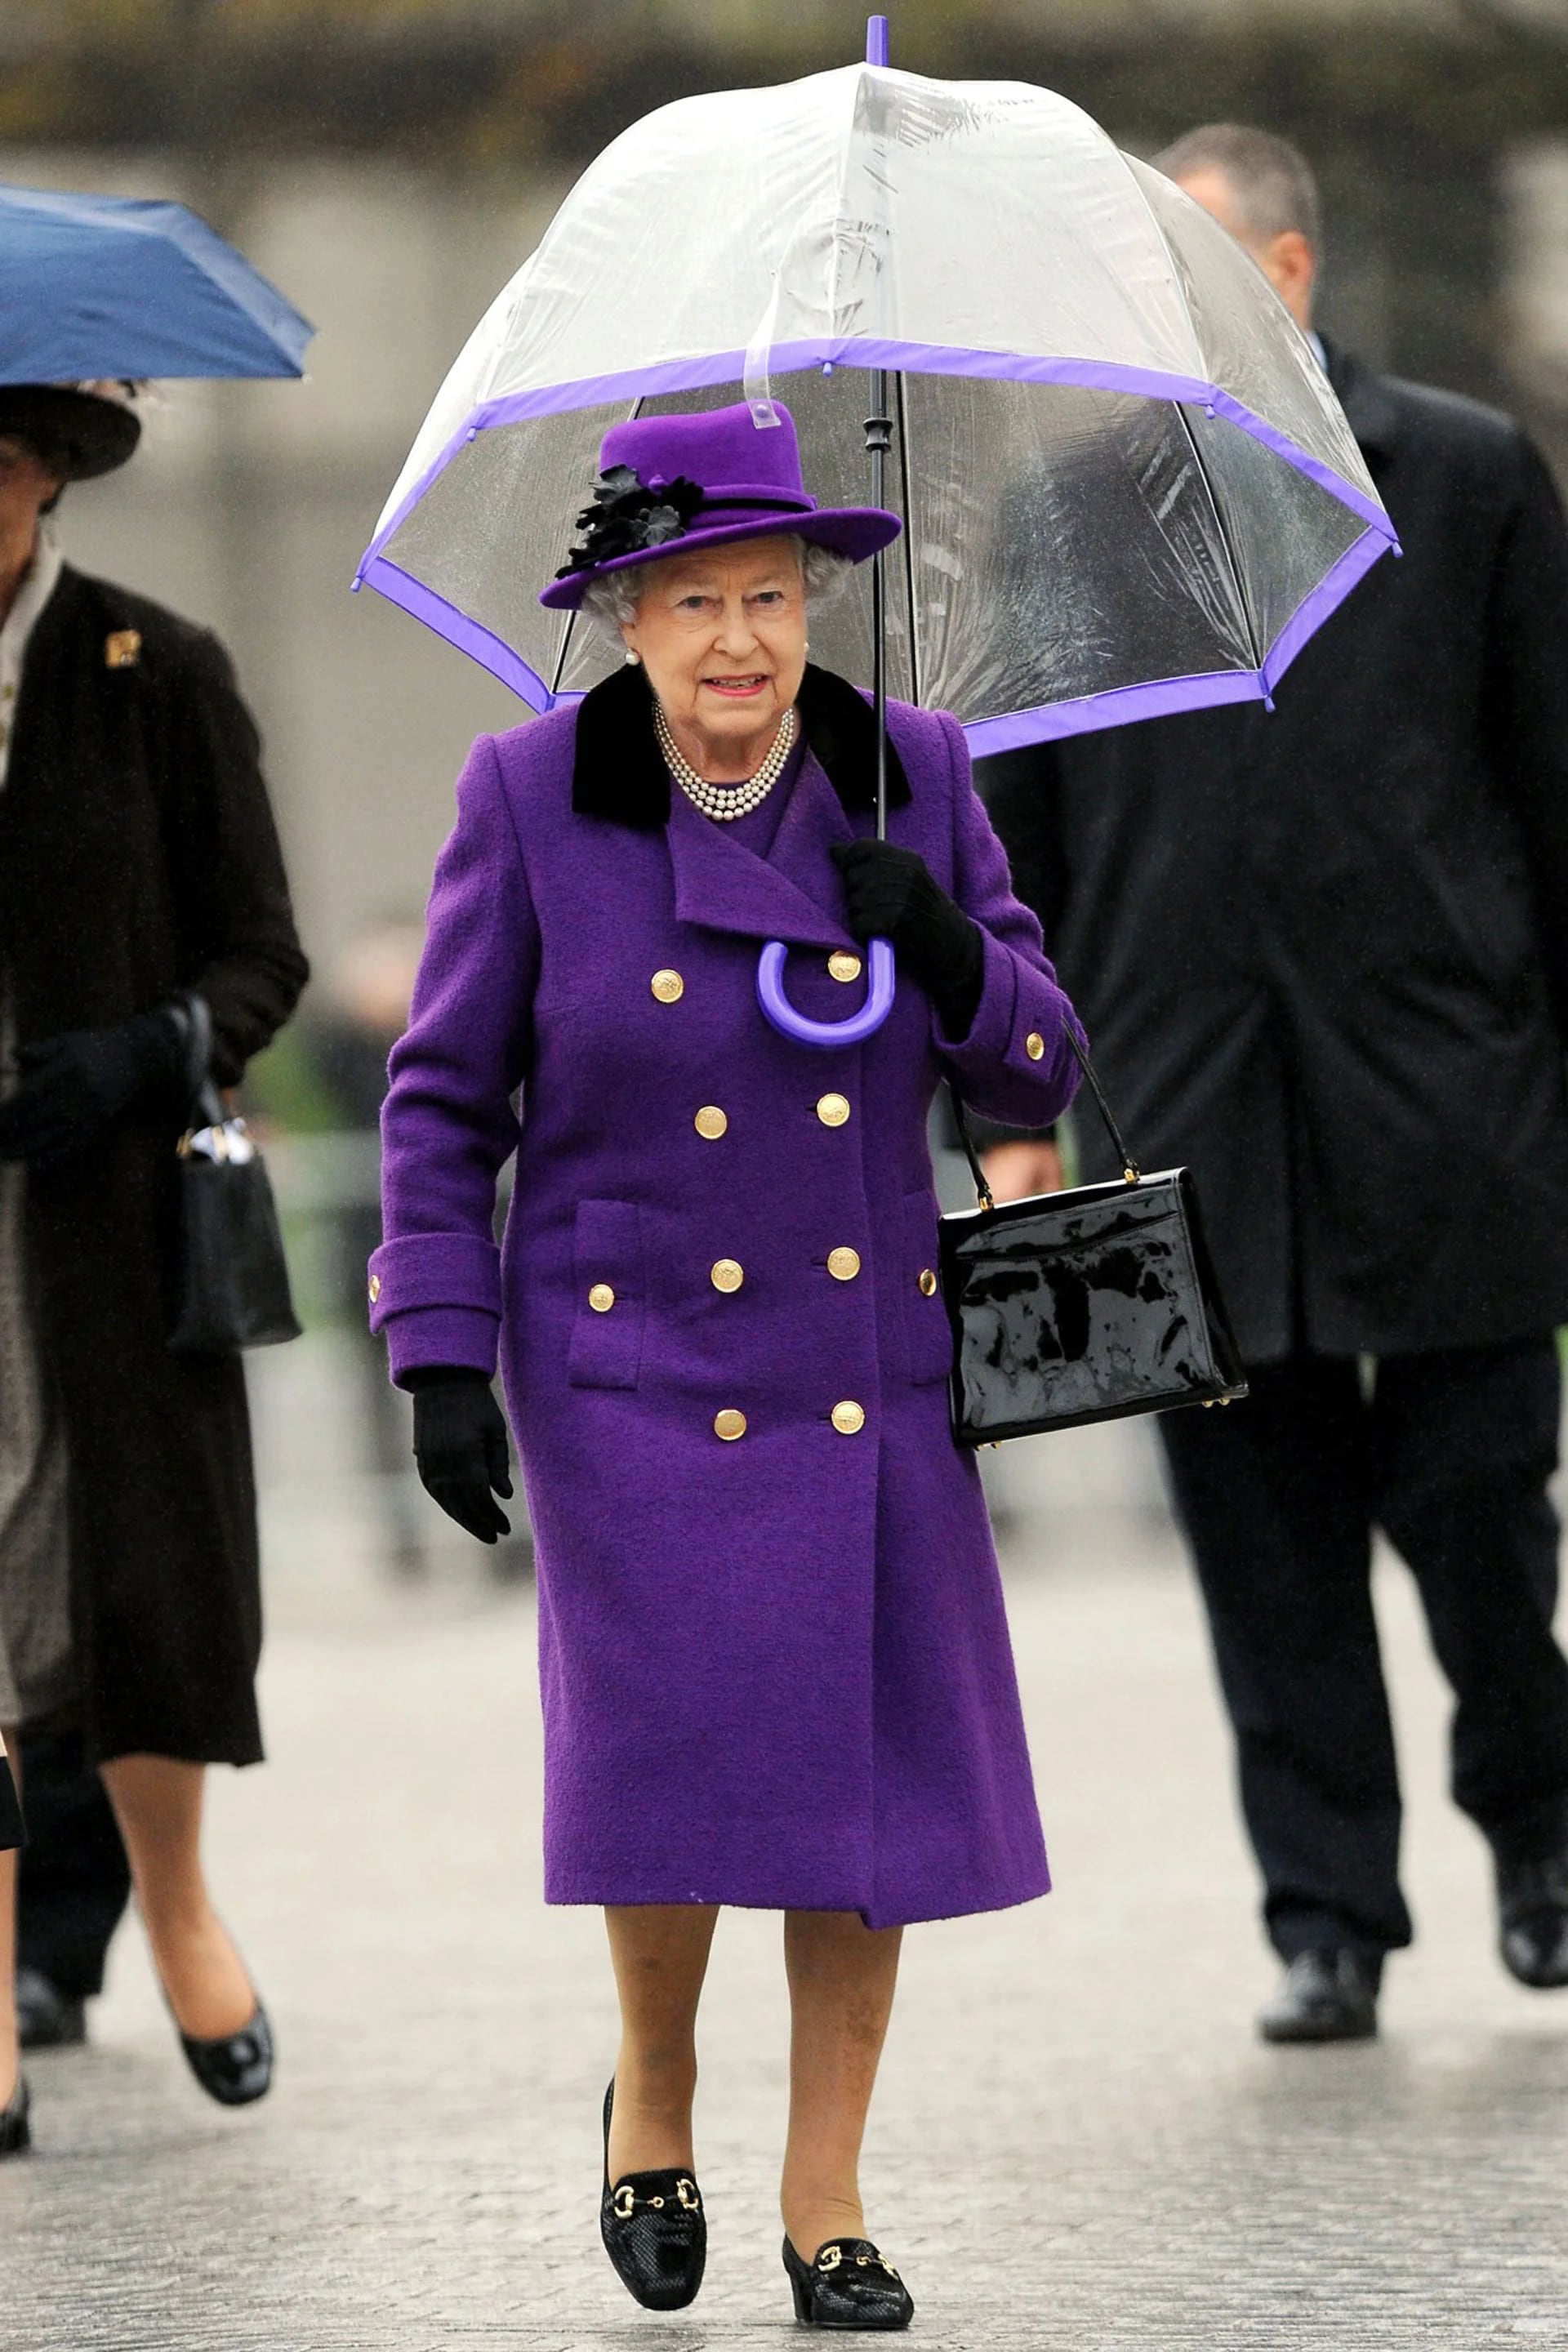 Con un vestido look en violeta y el paraguas transparente envivado en lila, pasea bajo la lluvia londinense